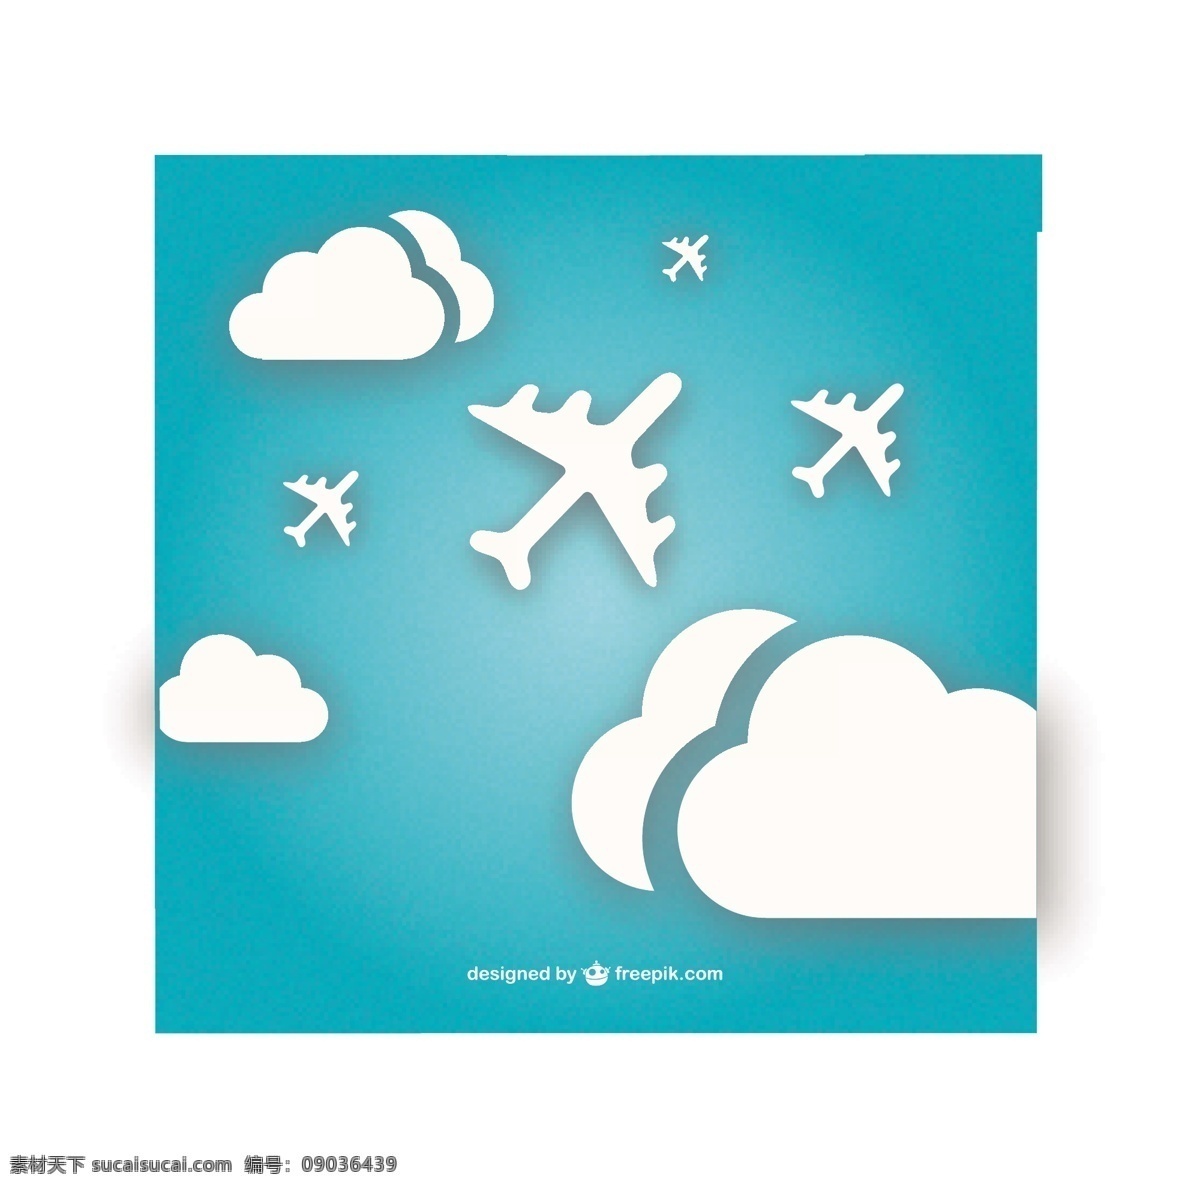 白色 飞机 云层 中 飞行 背景 旅行 天空 模板 蓝色背景 蓝色 艺术 平面 云 壁纸 图形 布局 平面设计 度假 插图 青色 天蓝色